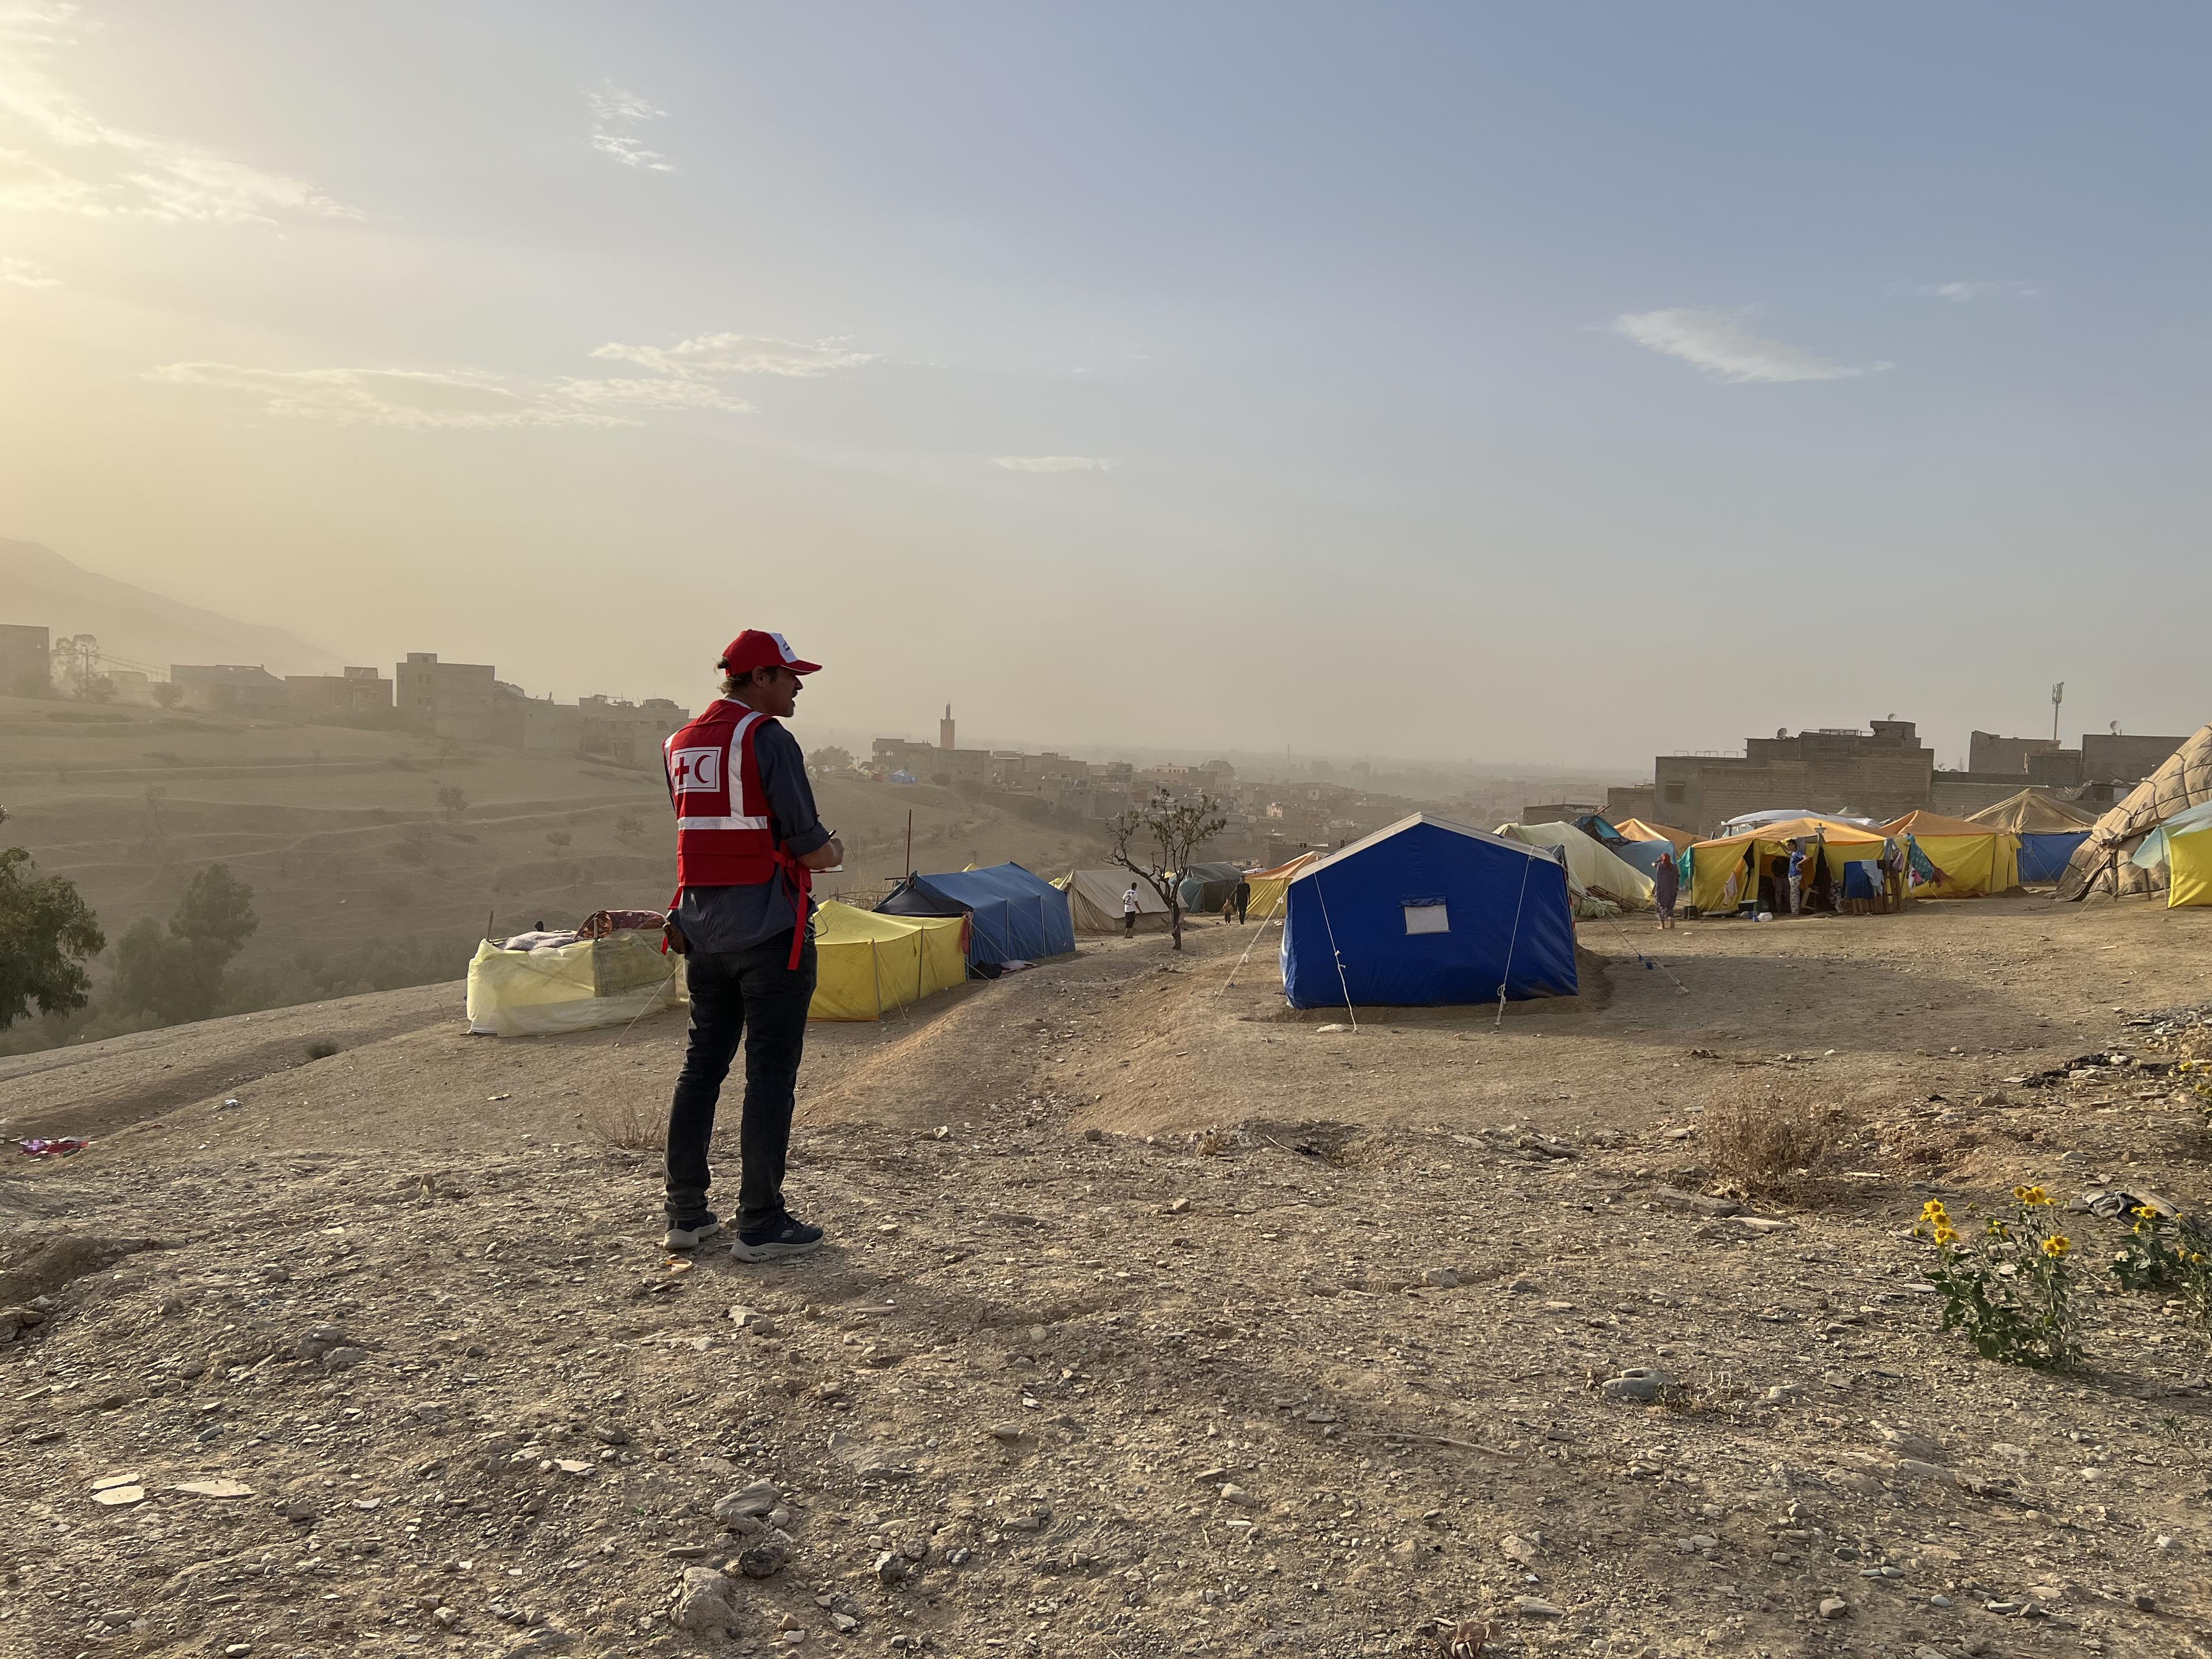 Pascal Panosetti, Spezialist für Notunterkünfte, vor einer provisorischen Zeltsiedlung in Marokko.